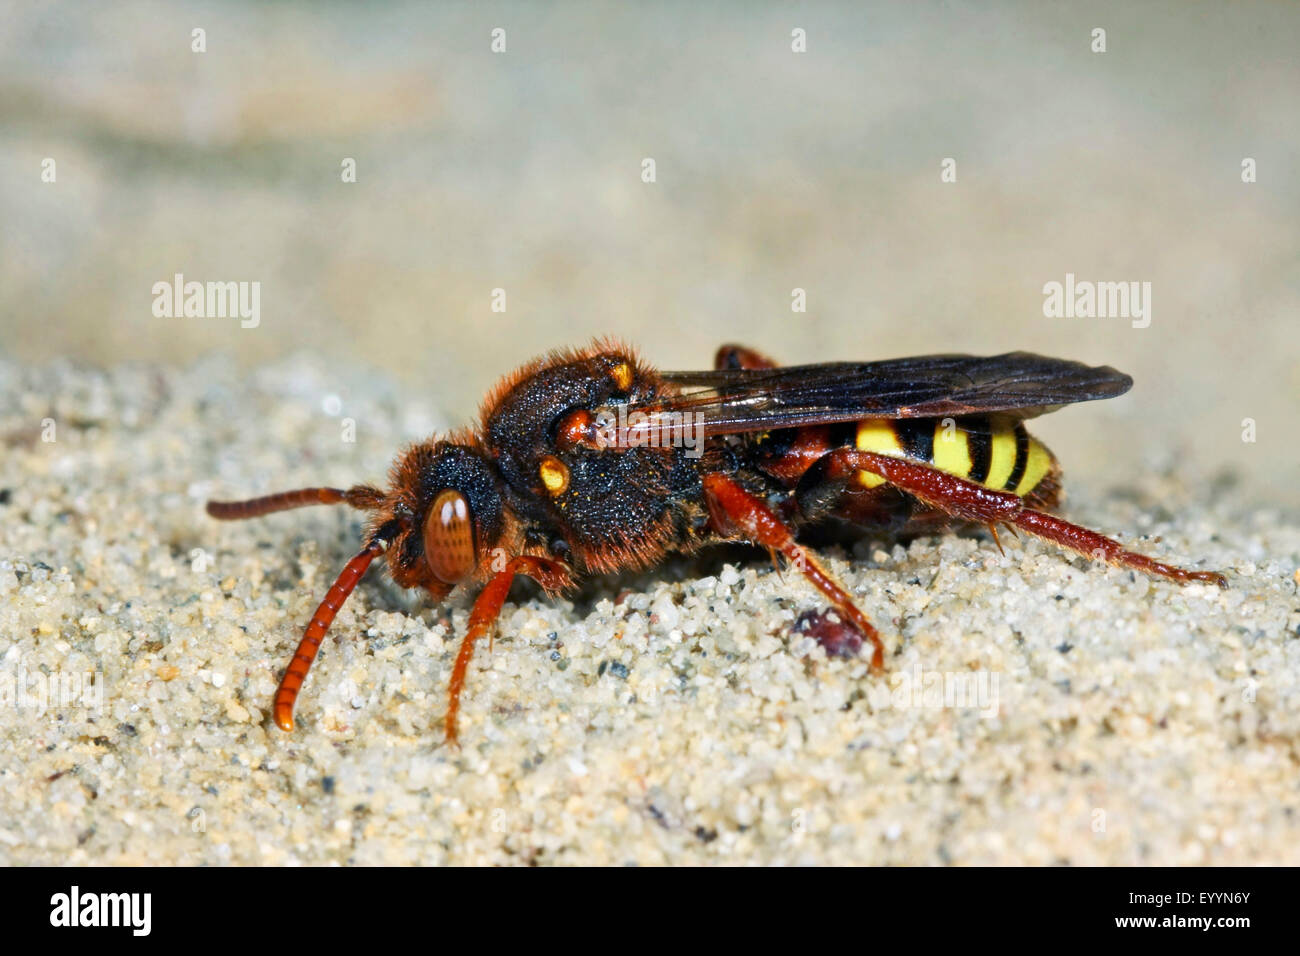 Cuckoo bee (Nomada lathburiana), on the ground, Germany Stock Photo